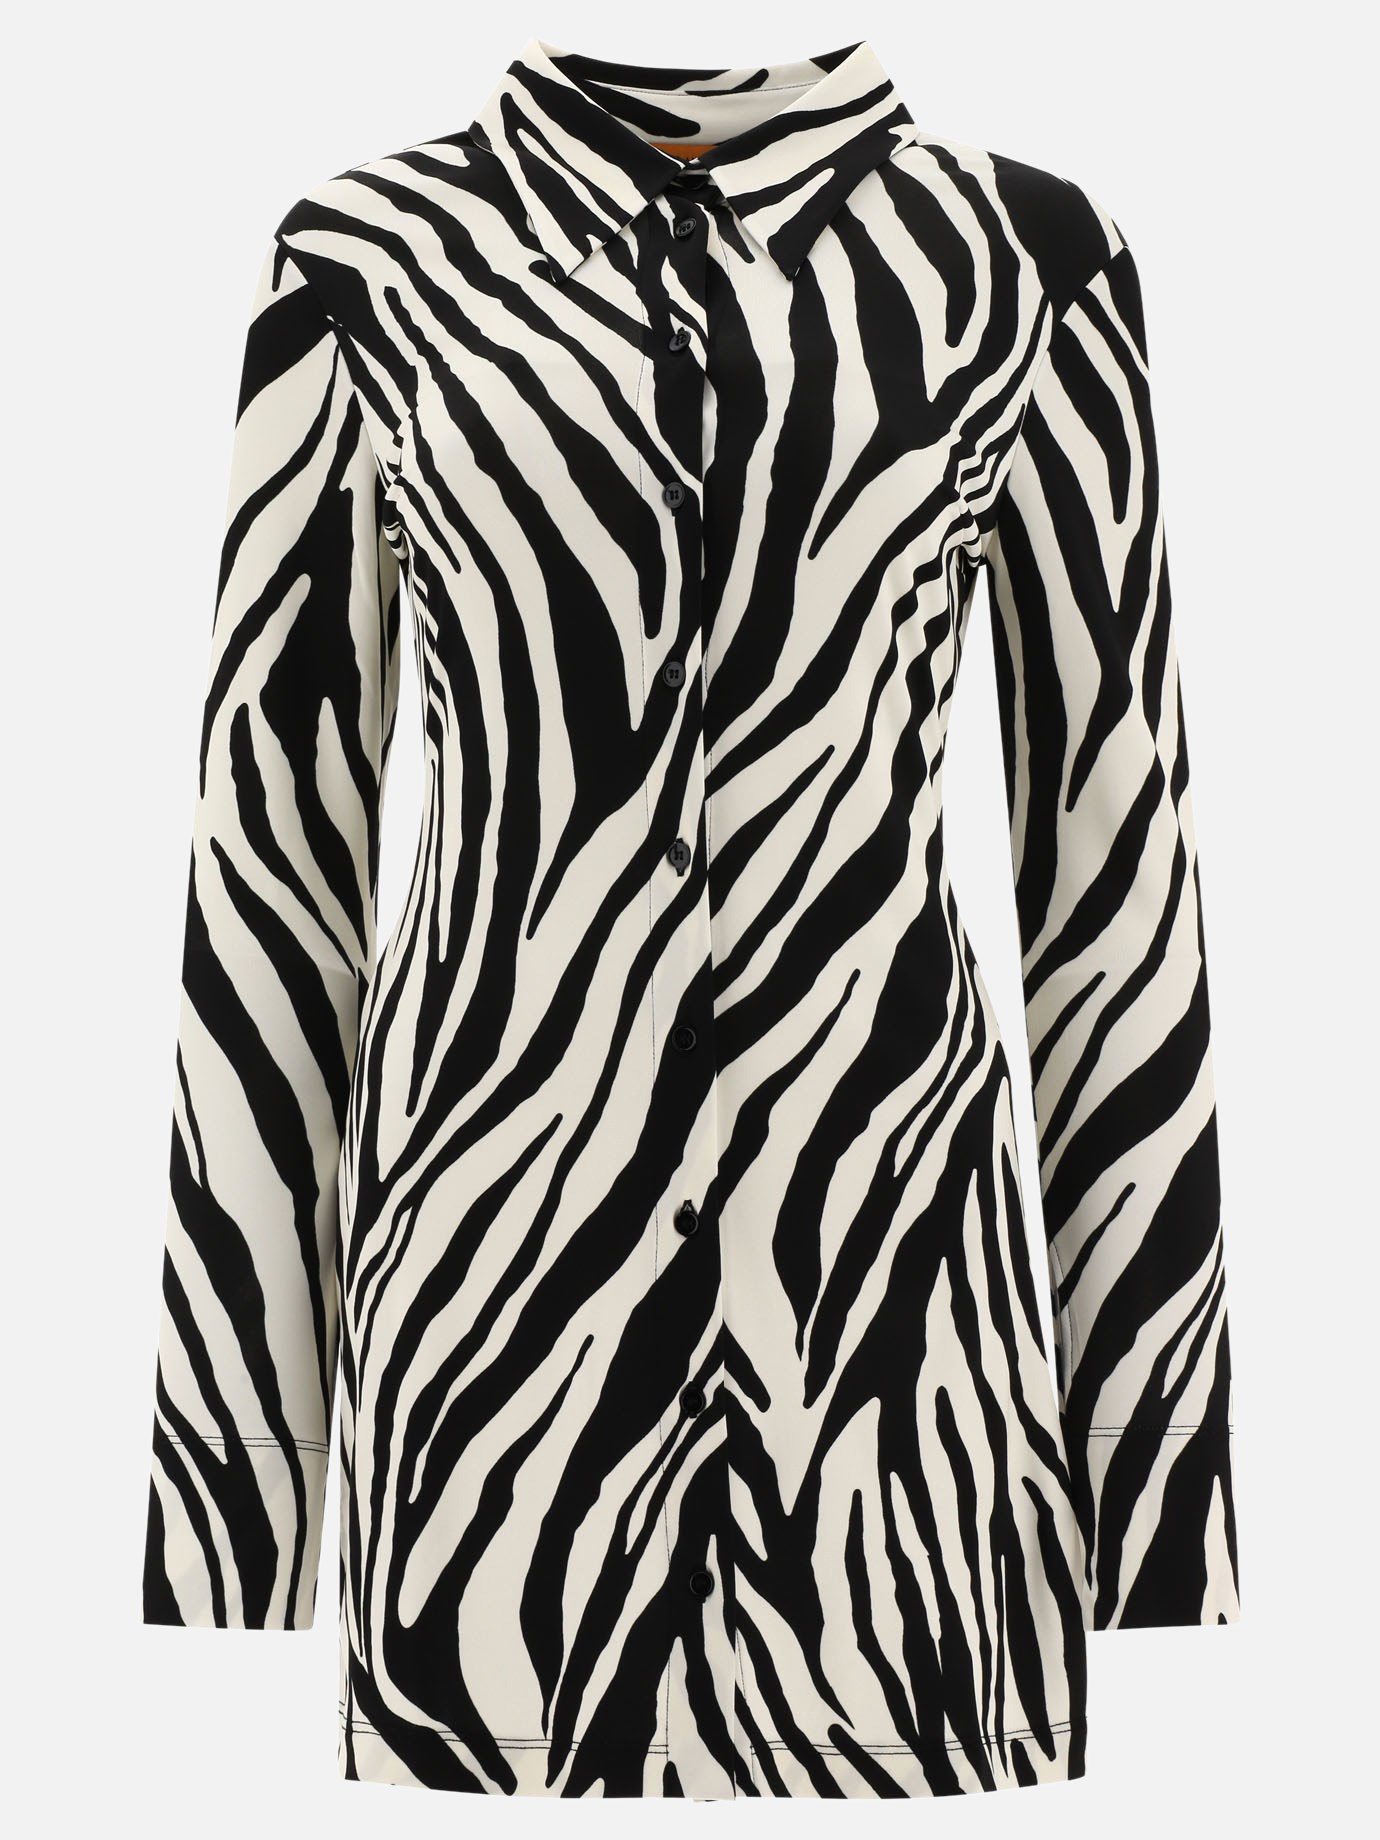 Zebra print shirt dress